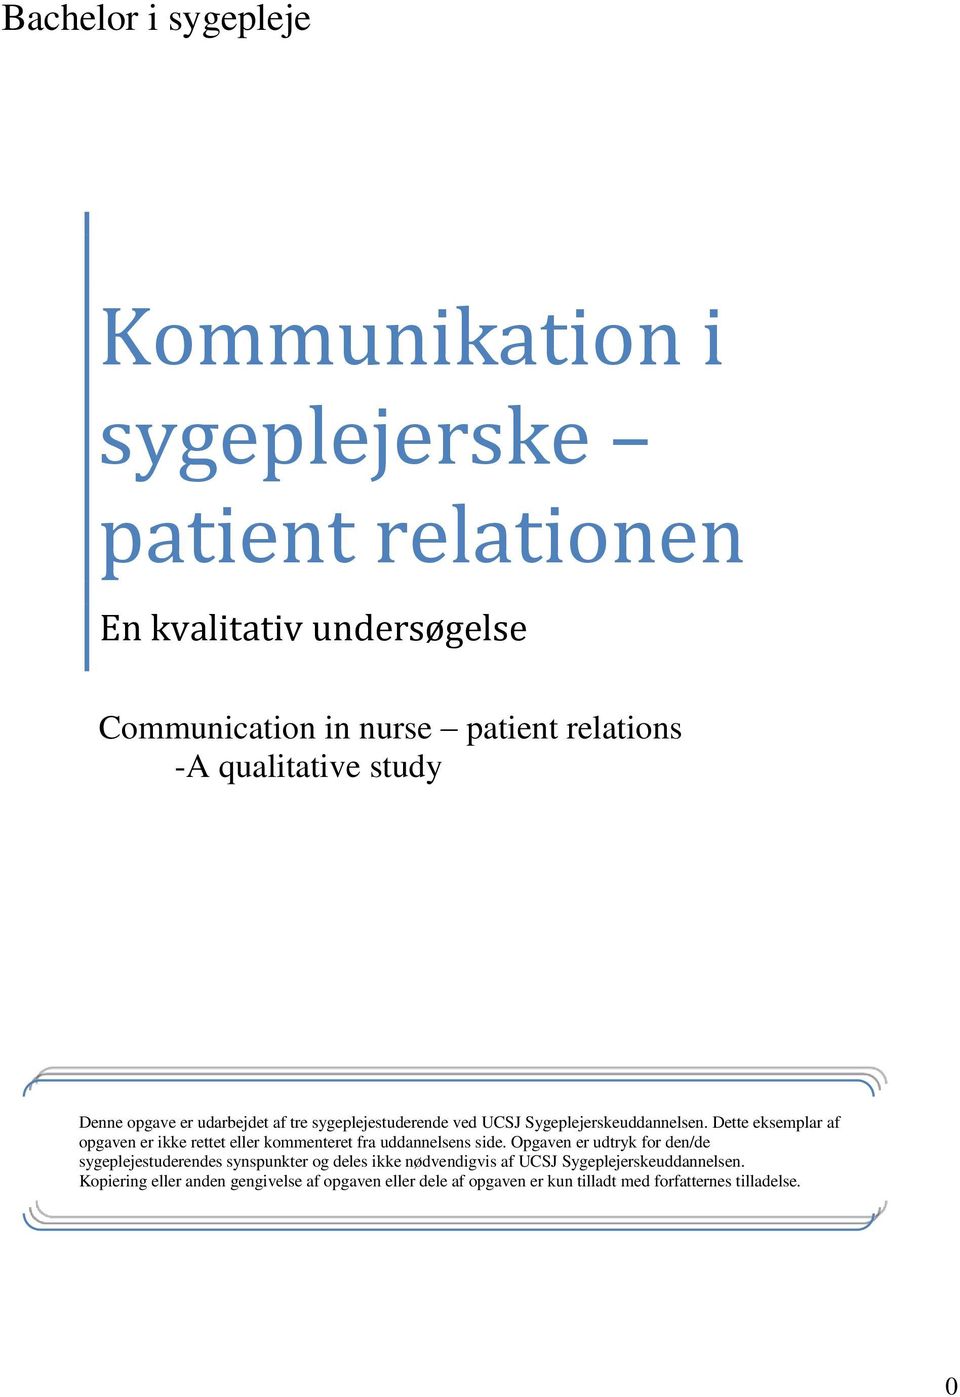 Kommunikation i sygeplejerske patient relationen - PDF download